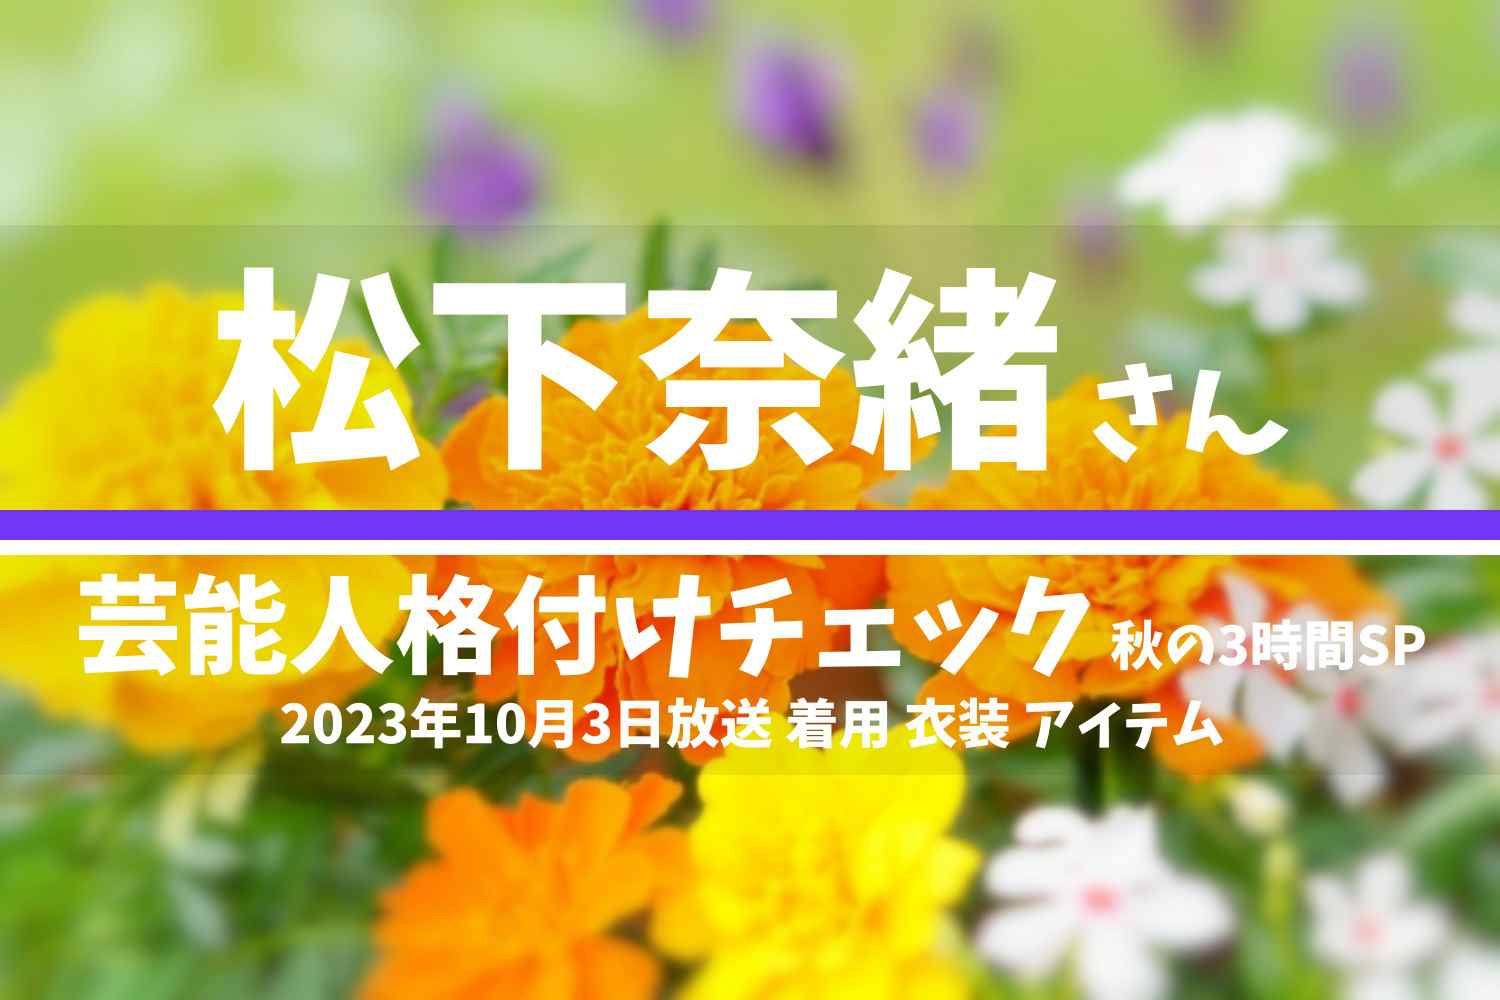 芸能人格付けチェック 松下奈緒さん 番組 衣装 2023年10月3日放送